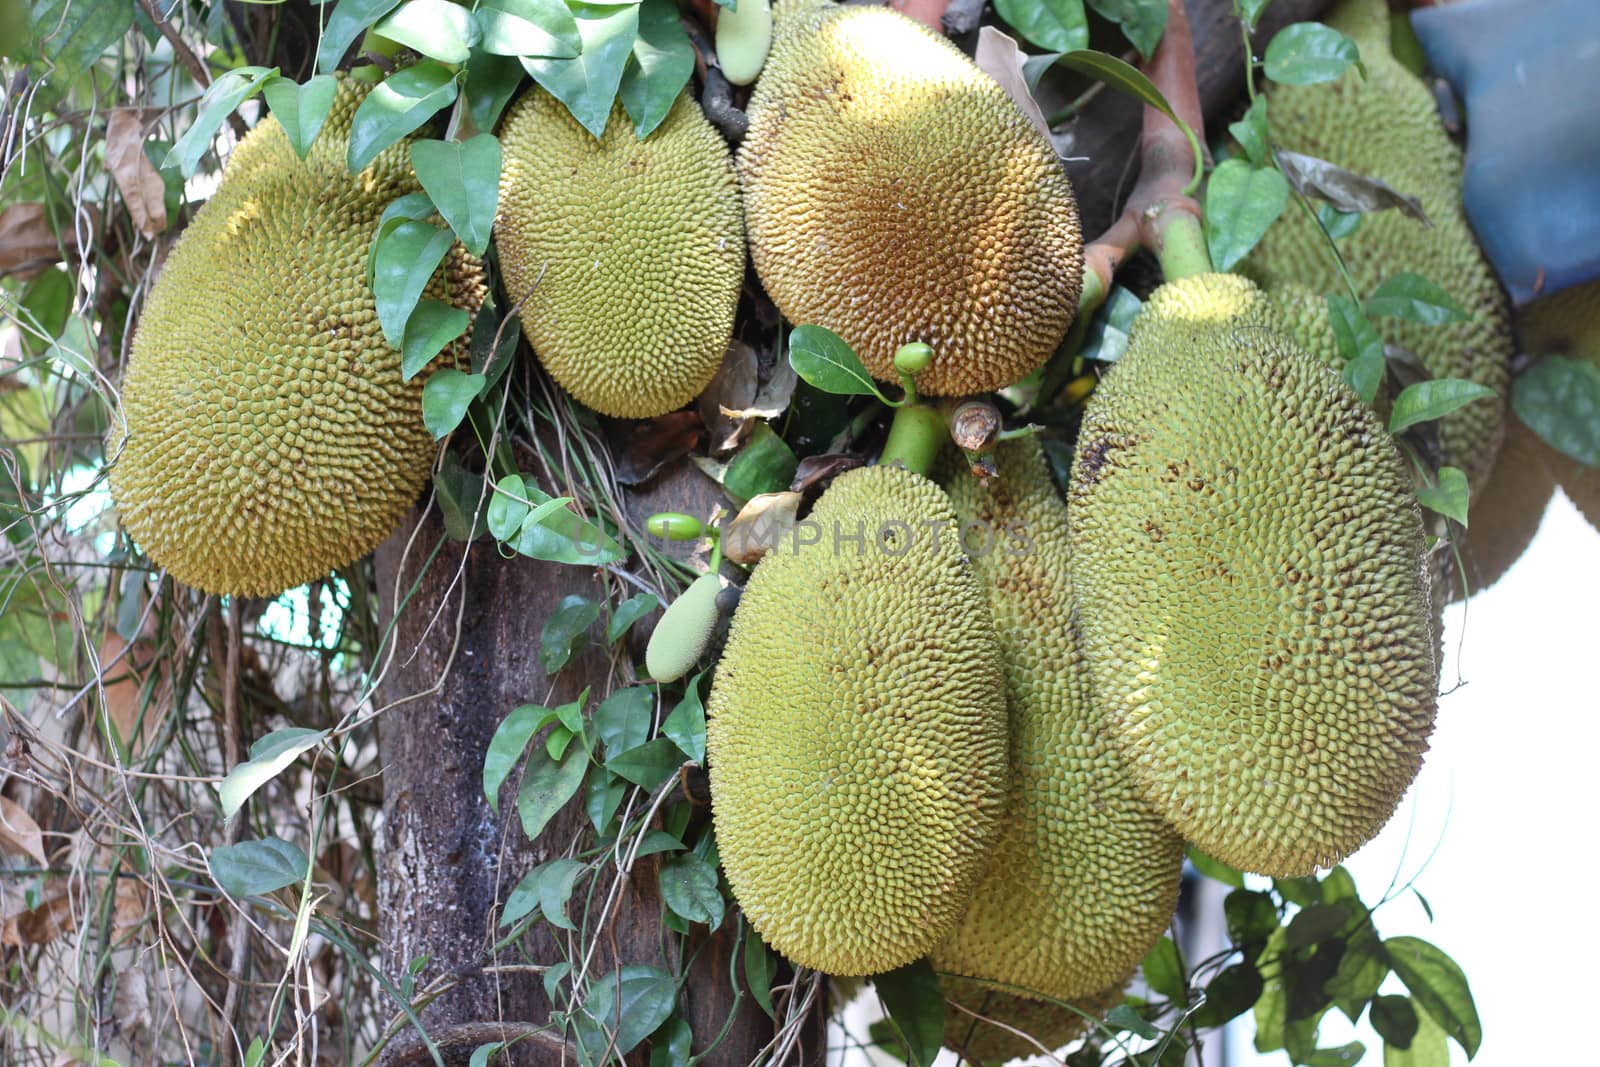 many jackfruit on the tree